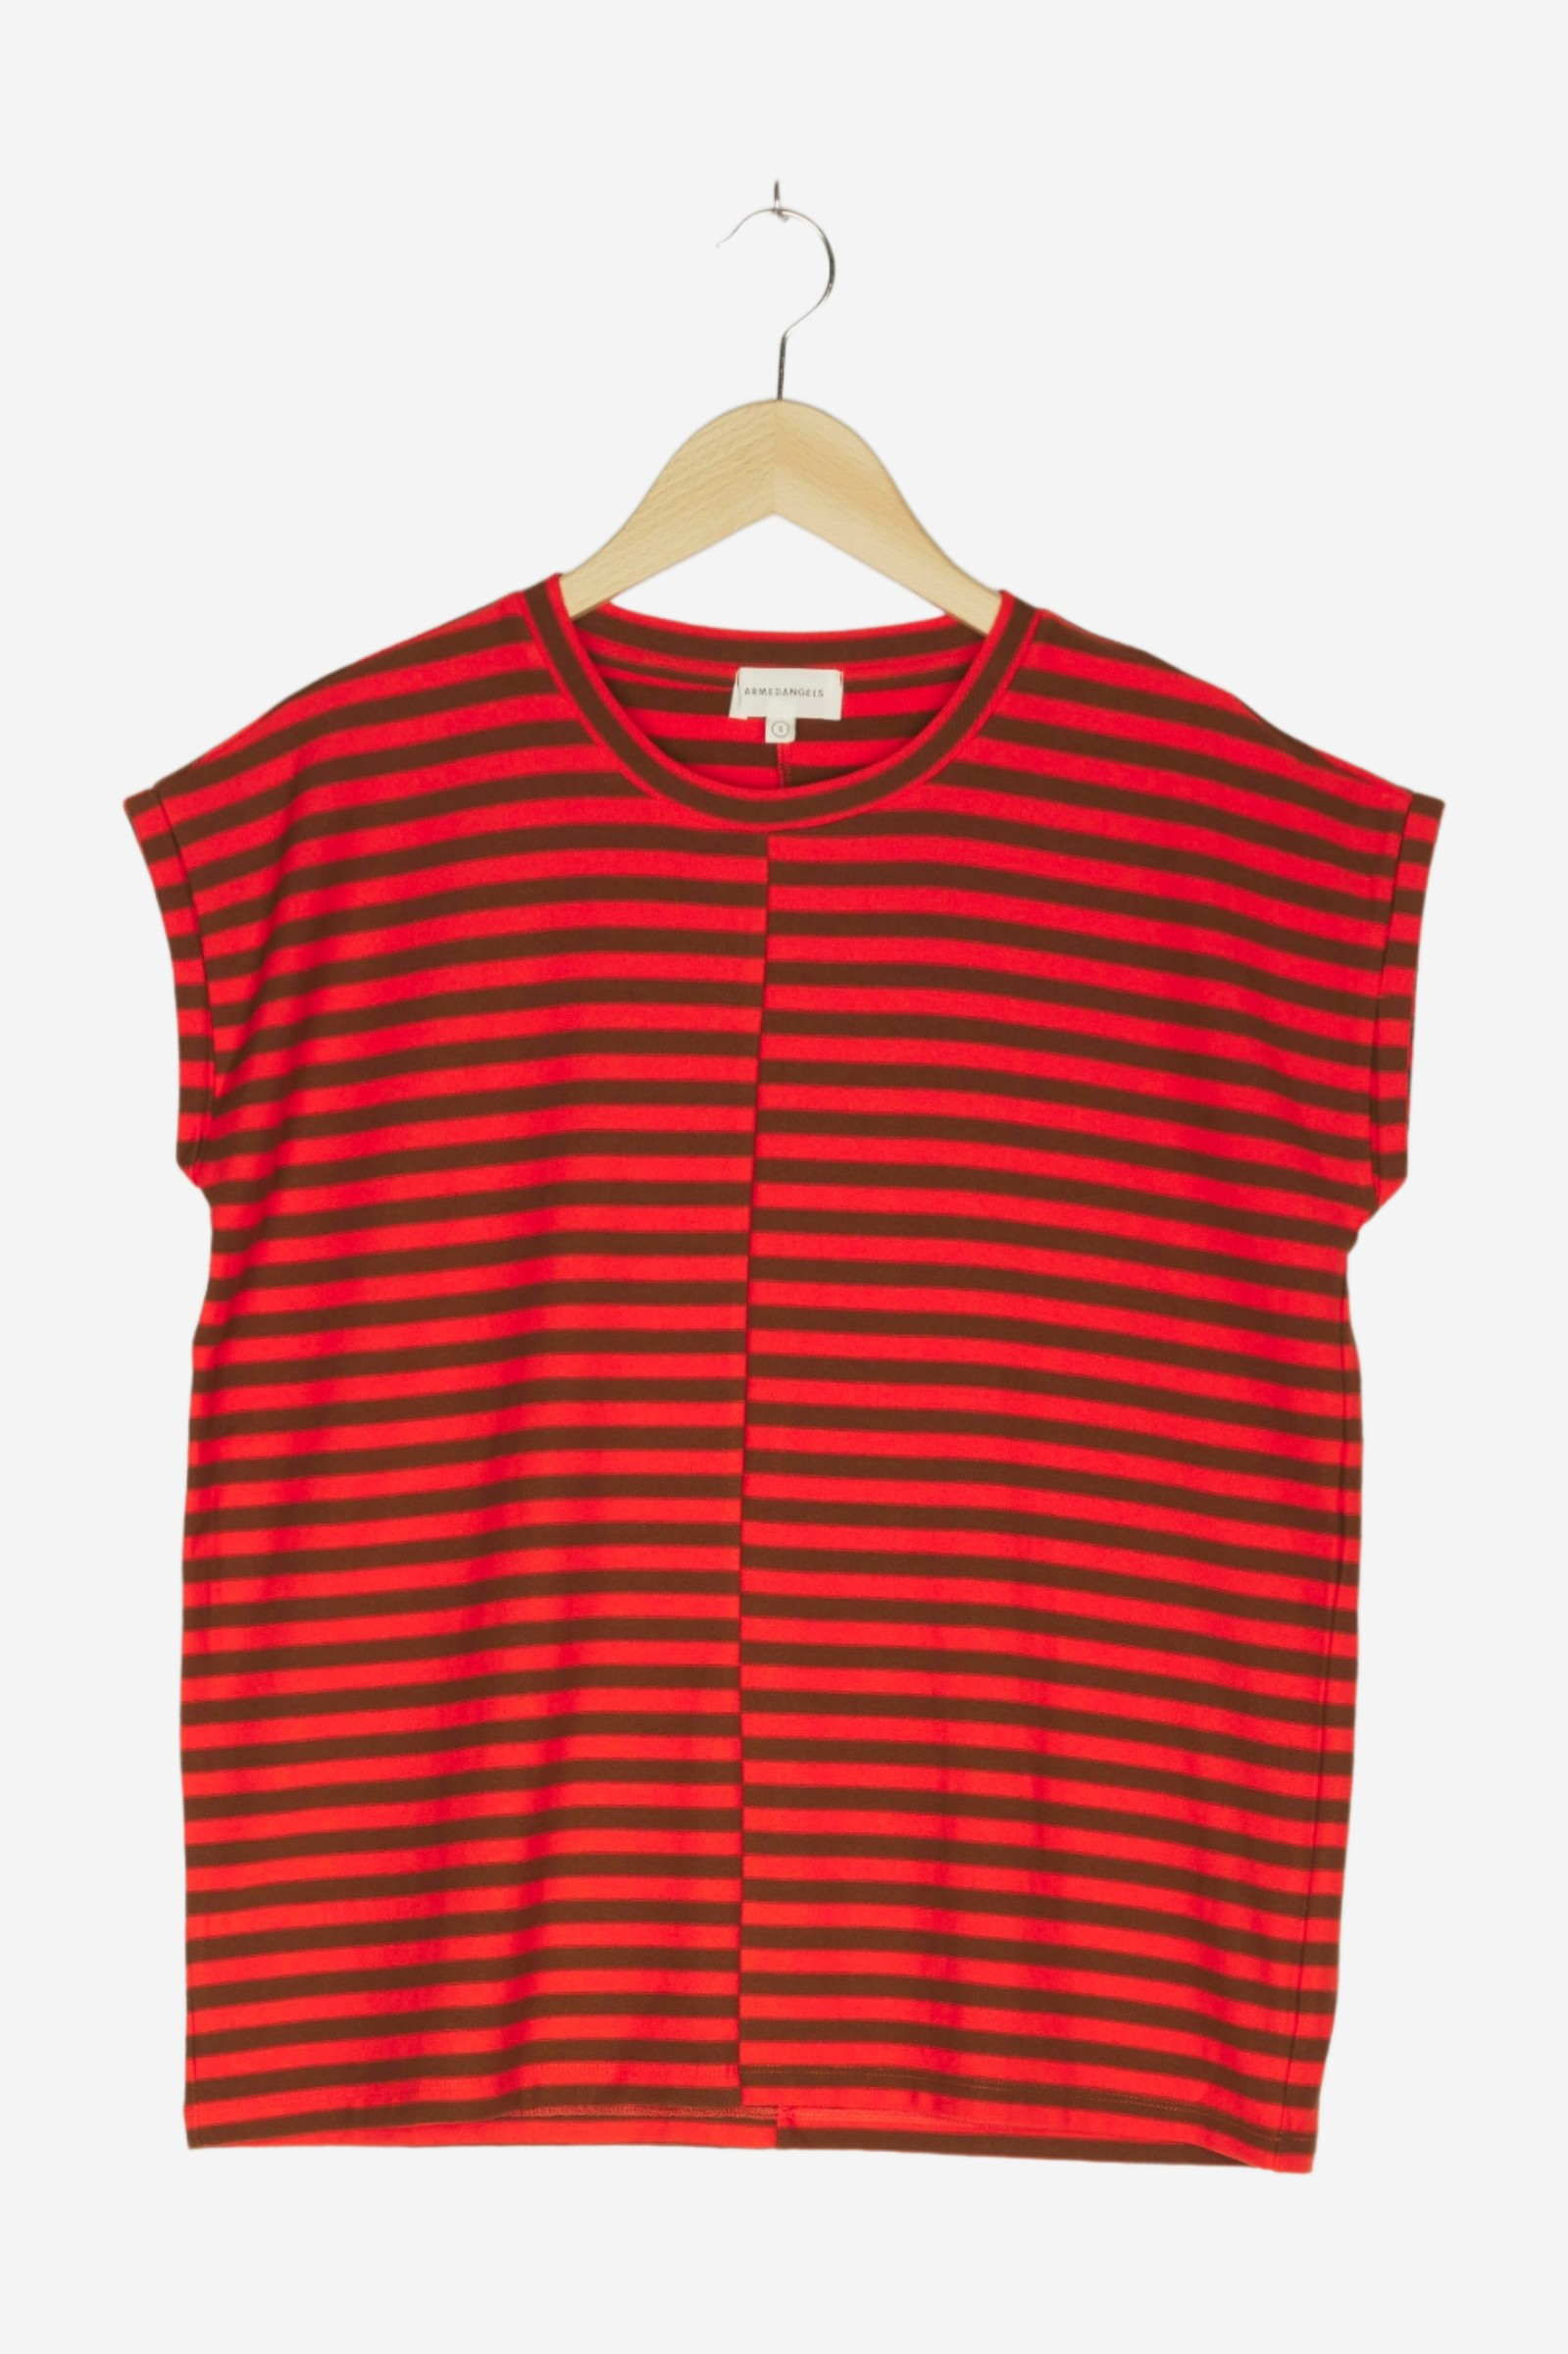 women Tops & T-Shirts Women / Shirts / T-Shirt w/ Stripes Multicolored